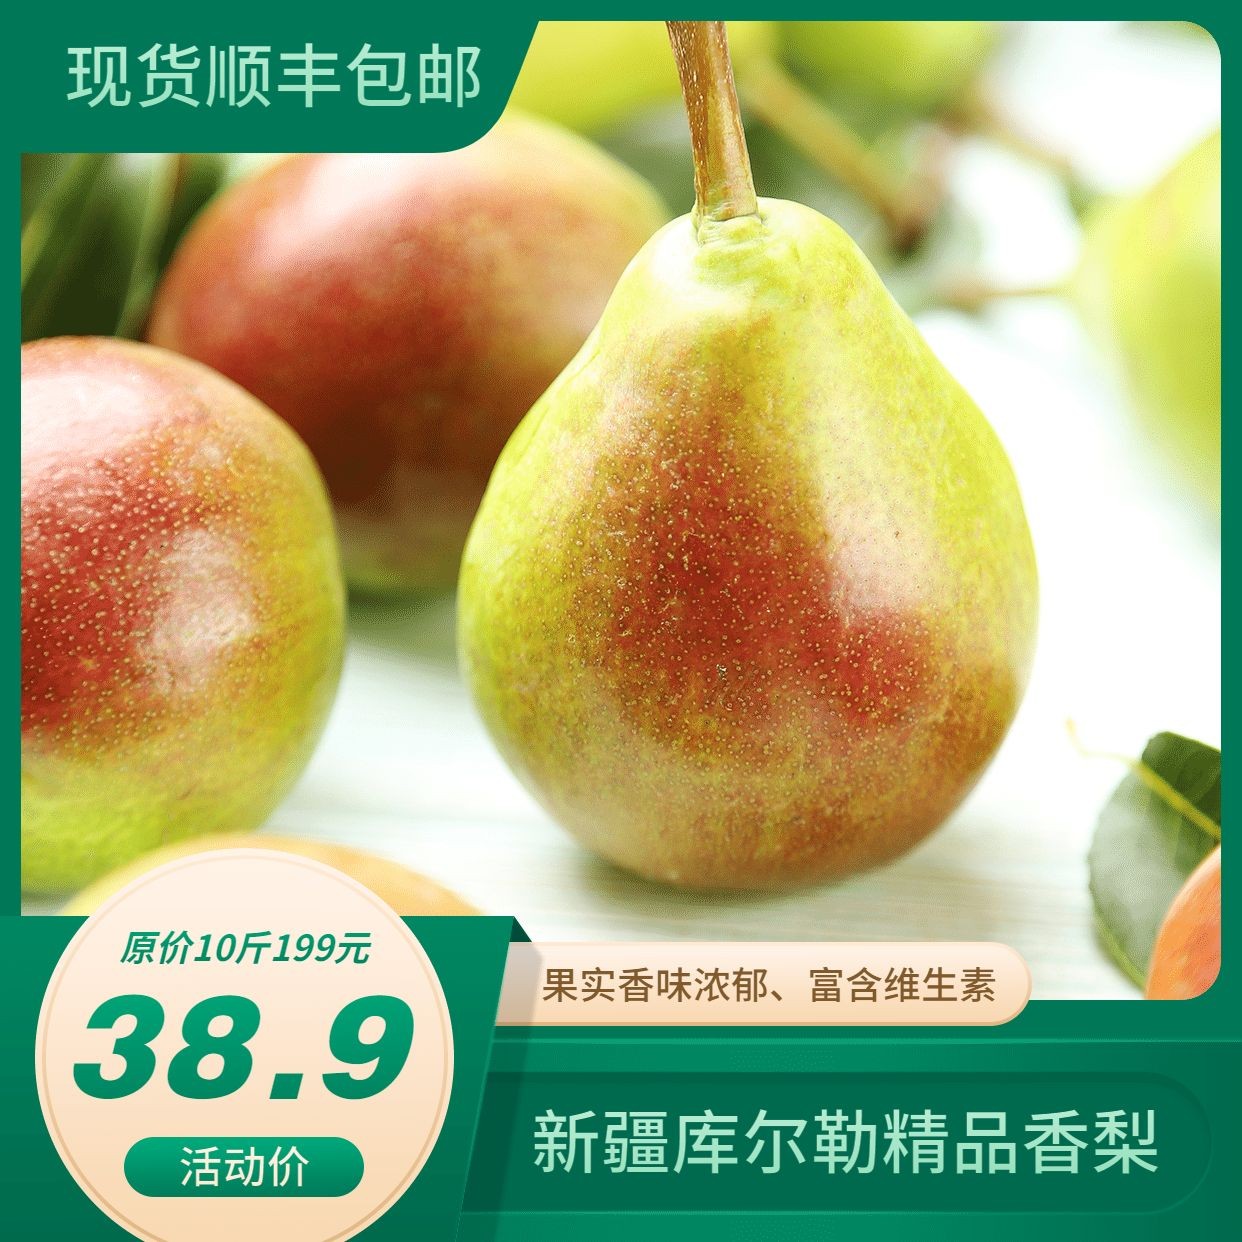 生鲜超市梨子图框展示方形营销海报